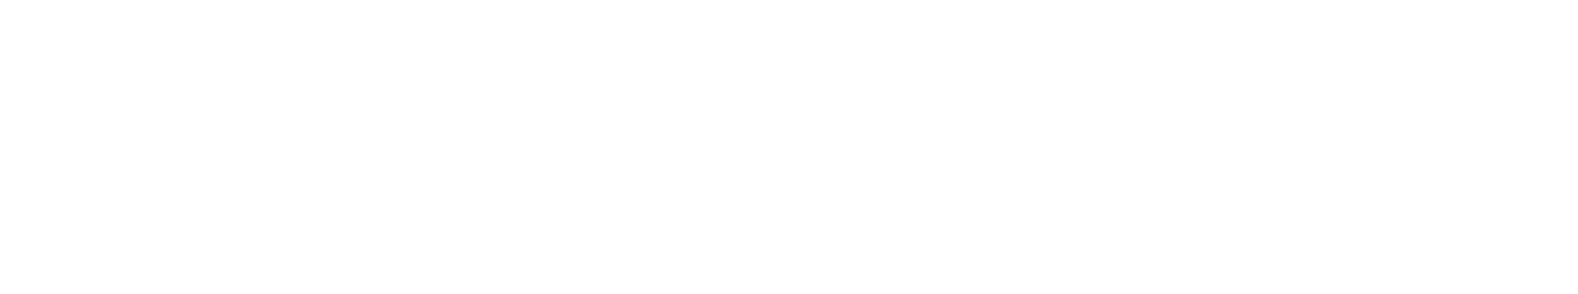 Aenza Logo groß für dunkle Hintergründe (transparentes PNG)